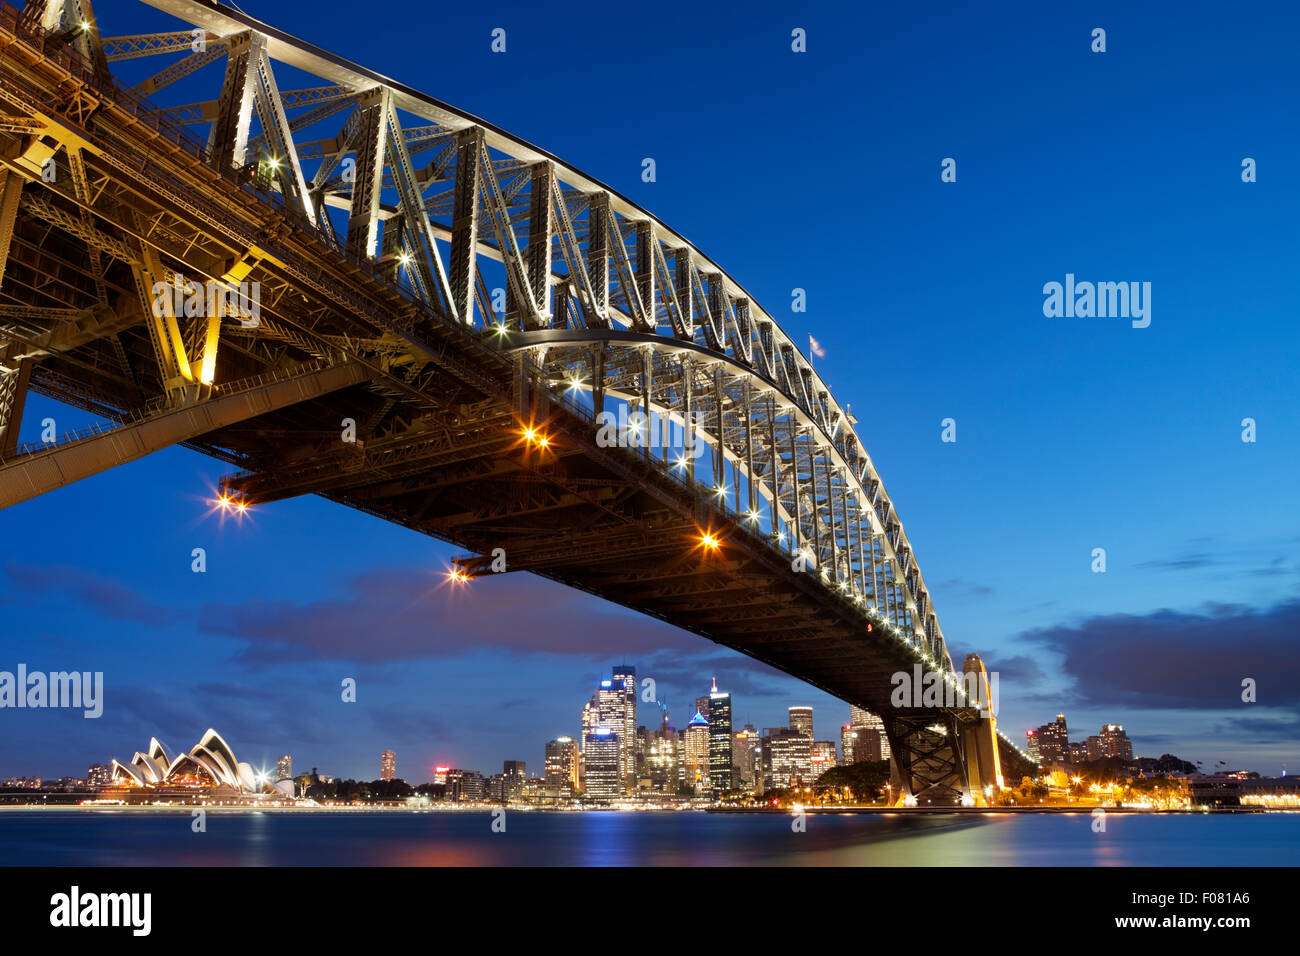 Le Harbour Bridge, l'Opéra de Sydney et le quartier central des affaires de Sydney. Photographié au crépuscule. Banque D'Images